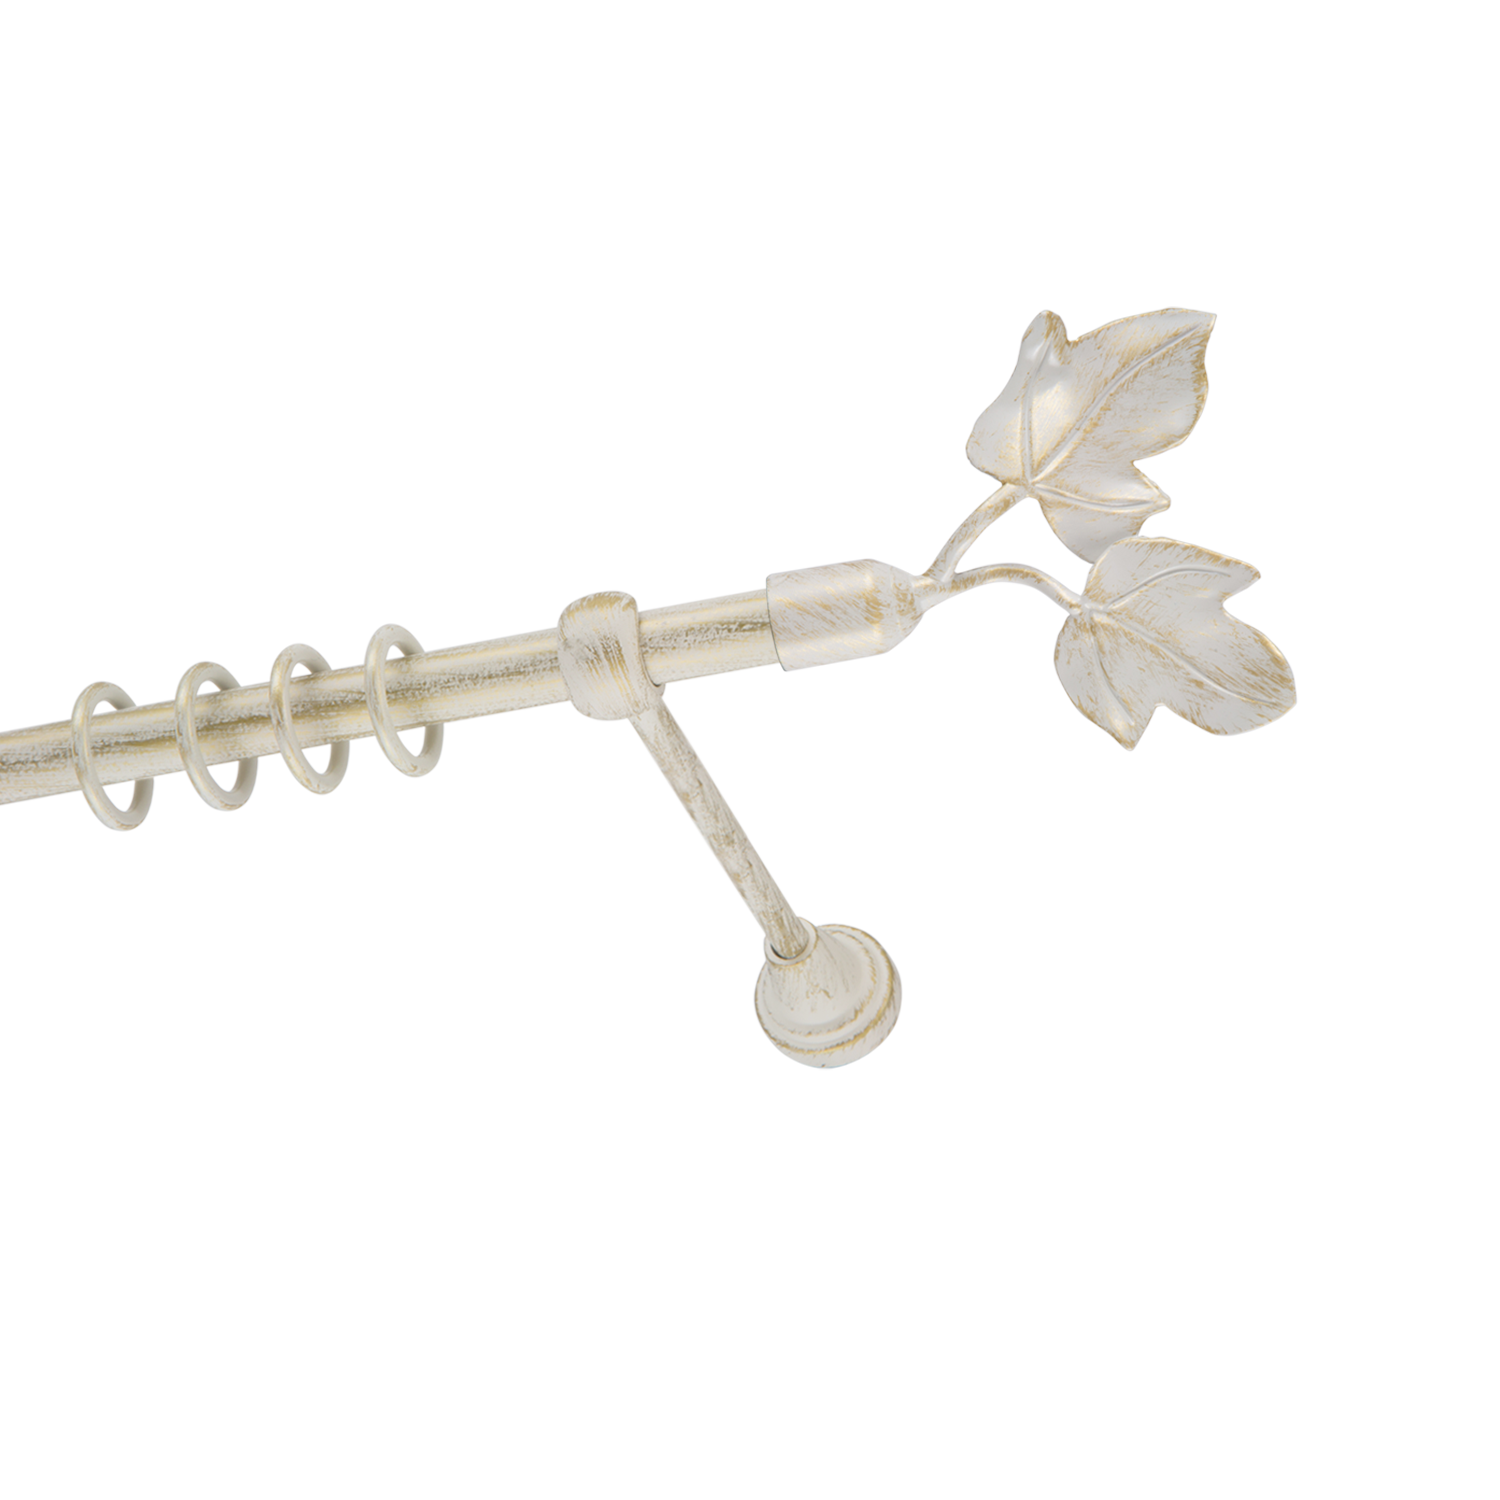 Металлический карниз для штор Листья, однорядный 16 мм, белый, гладкая штанга, длина 160 см - фото Wikidecor.ru